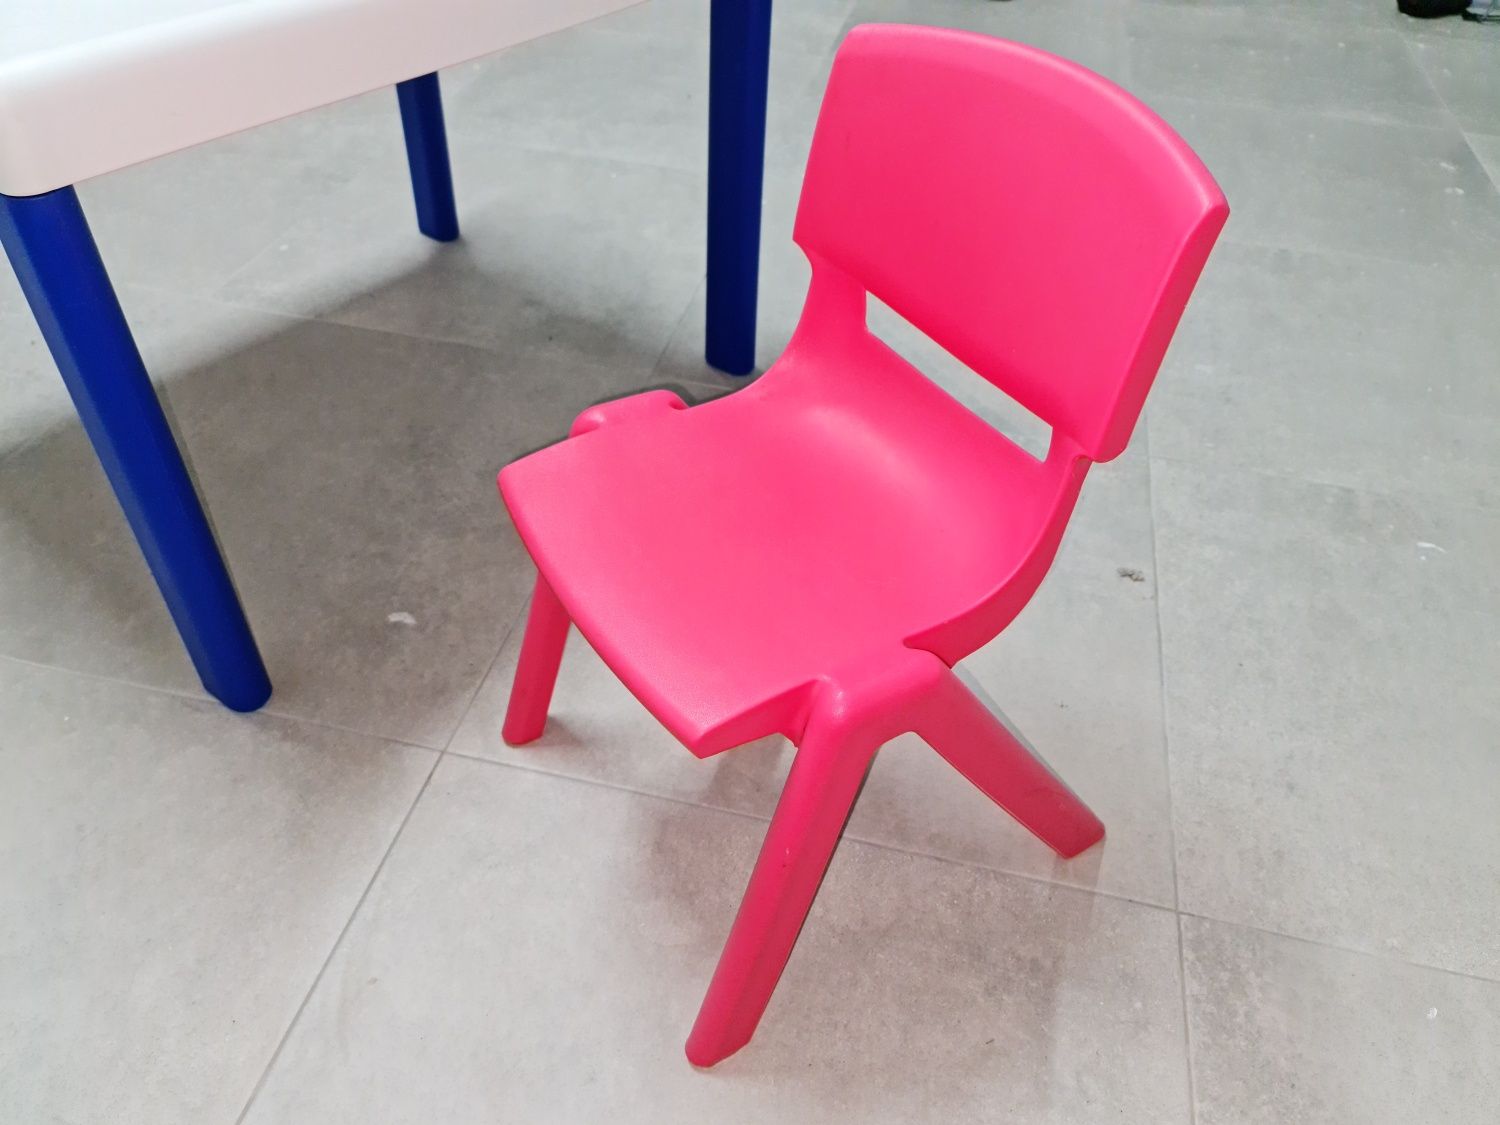 Mesa ergos criança + cadeira, marca usada infantários e escolas